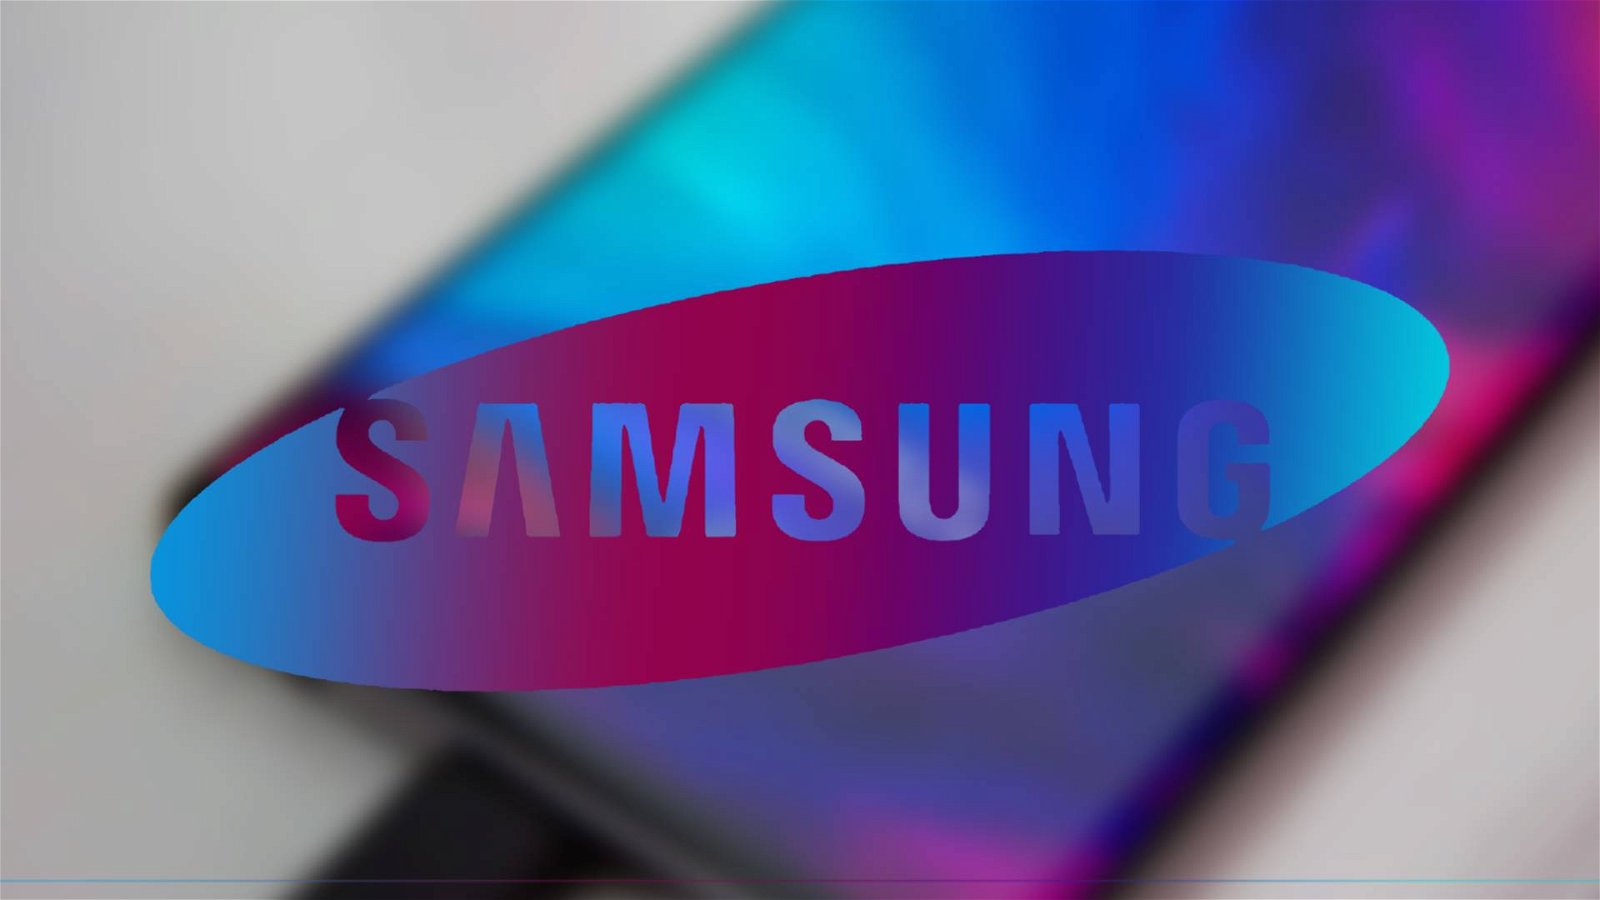 Immagine di Samsung Galaxy A11 e M11: gli smartphone meno costosi del brand ottengono una certificazione